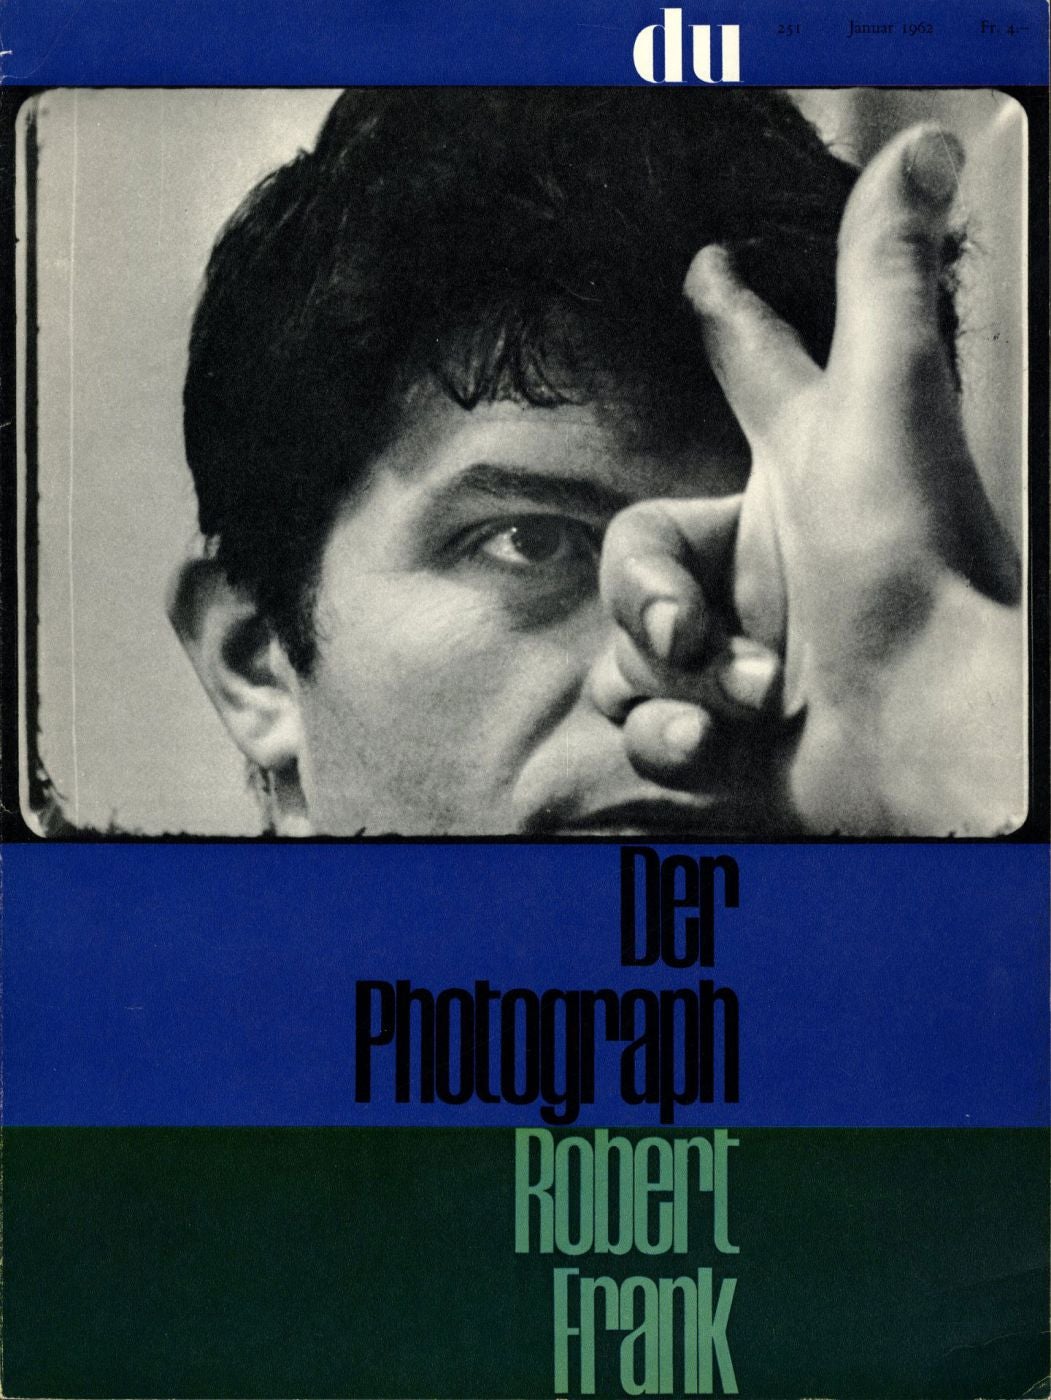 Du (January, 1962): Der Photograph Robert Frank